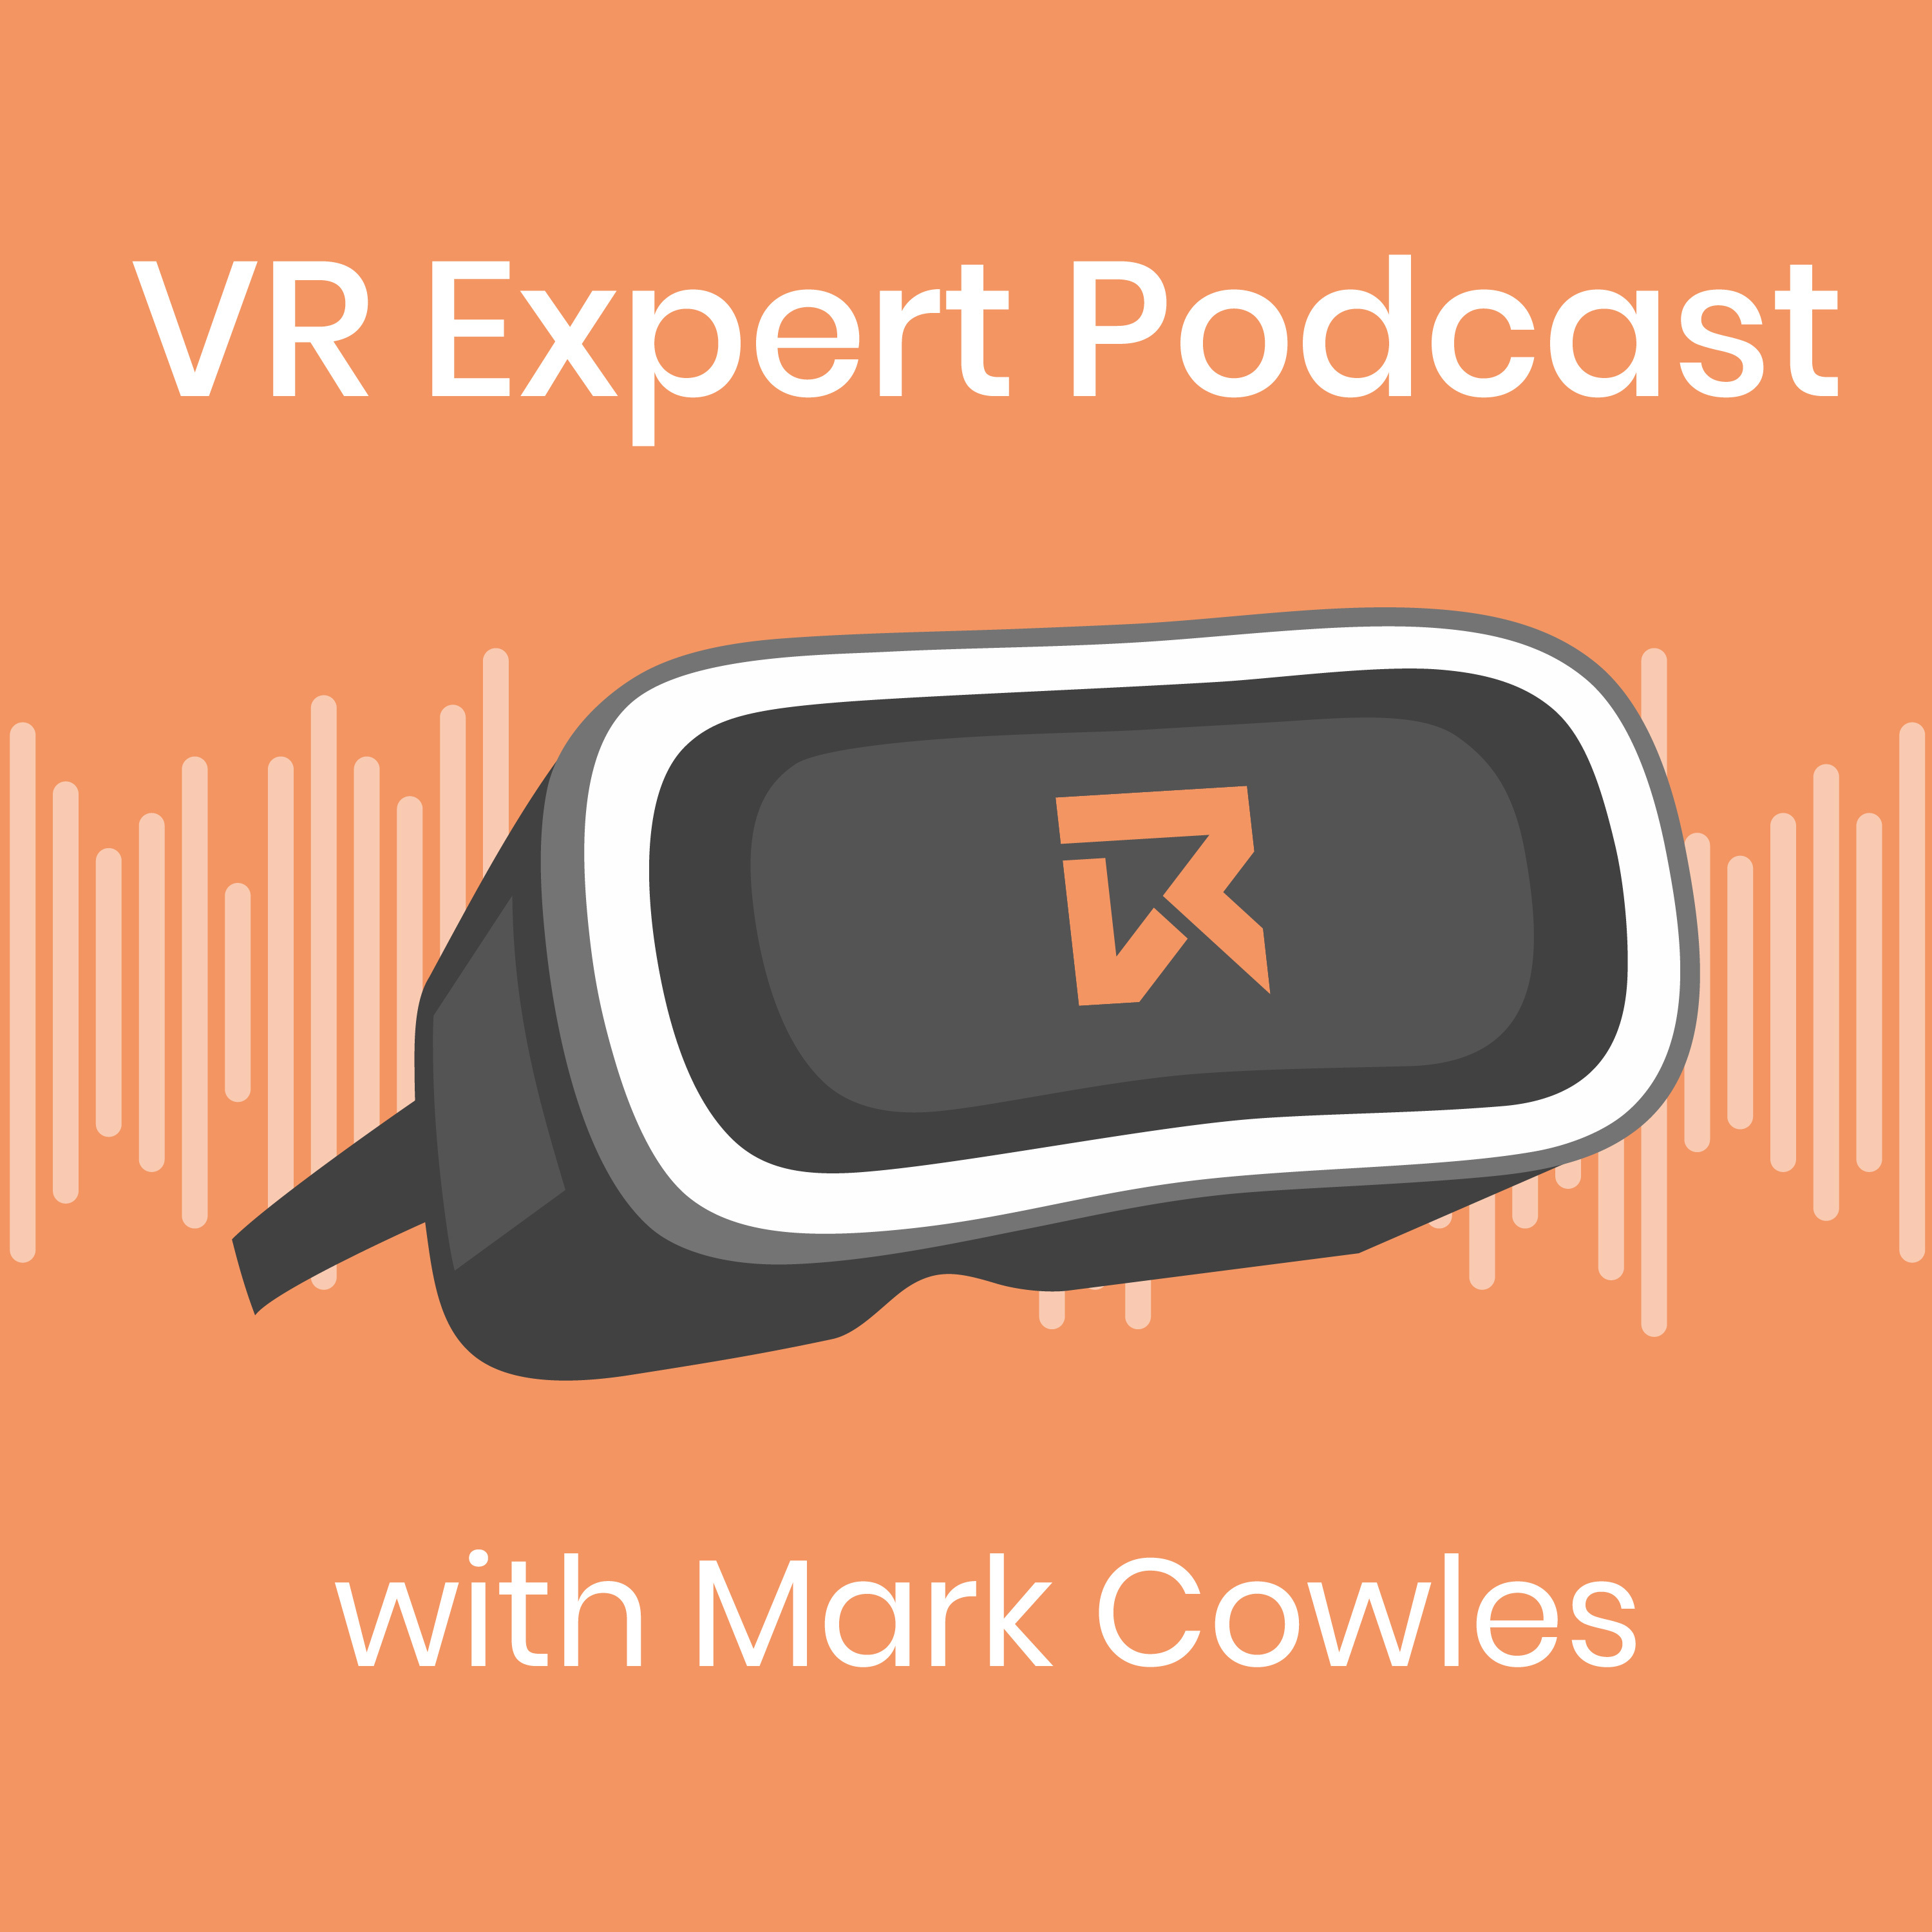 Artwork for podcast VR Expert Podcast